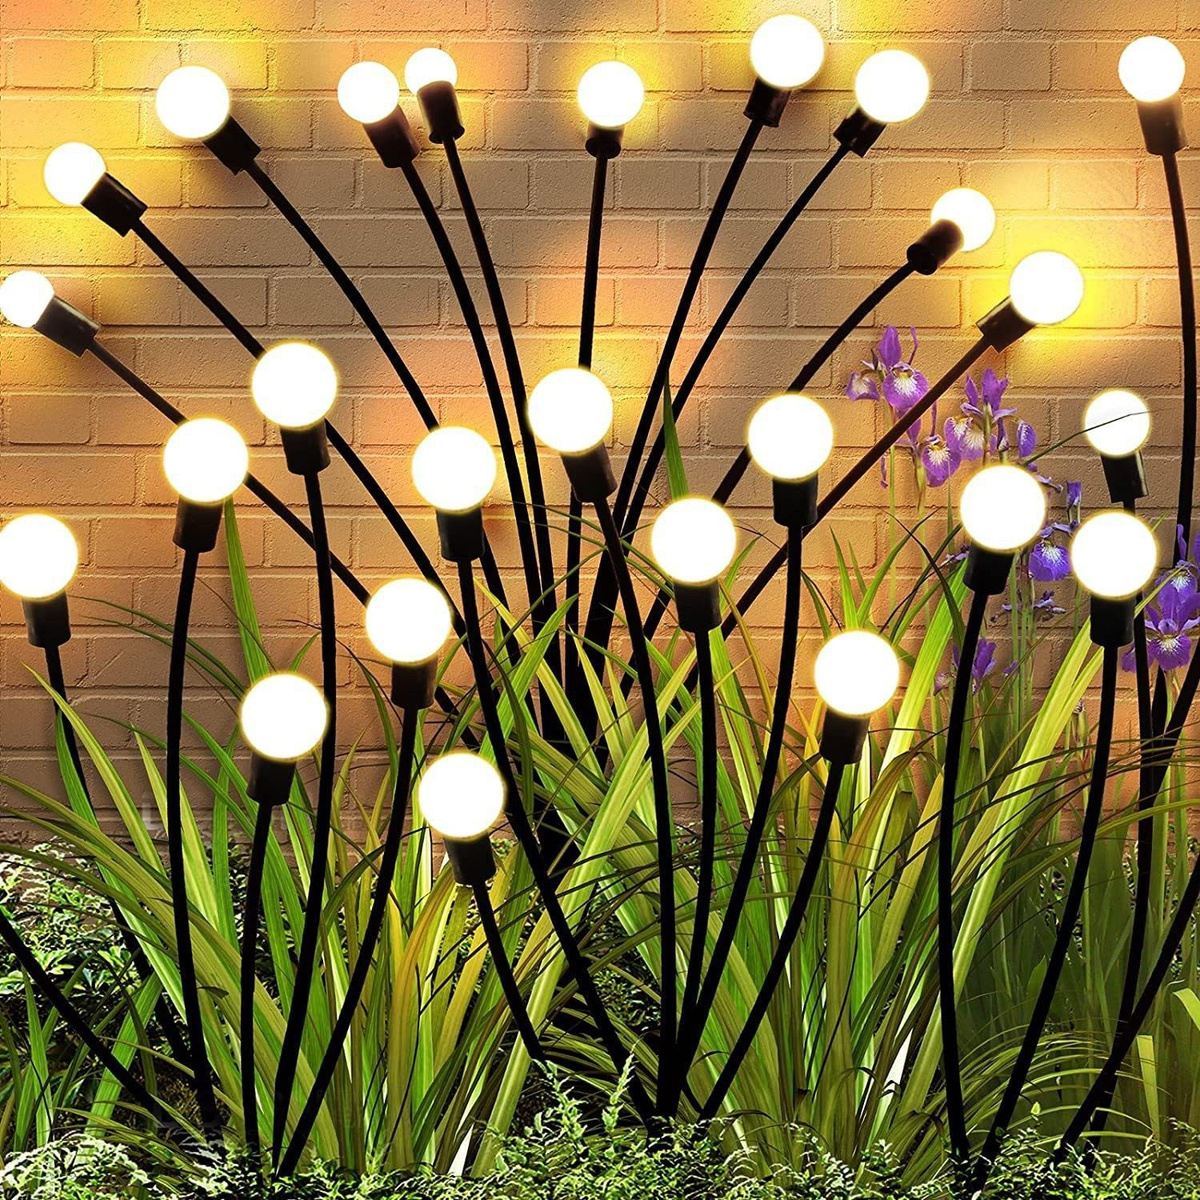 Садовые светильники идеальное решение для освещения вашего сада, дачи или участка. Этот декоративный уличный светильник создаст уютную атмосферу и подчеркнет красоту вашего ландшафта. Ланшафтные светильники оборудованы солнечной батареей, поэтому для его работы не требуется подключение к электросети. Просто установите его в нужном месте, и он автоматически зарядится днем и включится ночью, обеспечивая яркое освещение. Его также можно использоваться как ограничительный фонарь вдоль аллей, вдоль пруда или у беседки, придавая вашему саду уют и стиль. Изготовлен из прочного пластикового материала, он надежен и долговечен. Подсветка создаст уникальные игры теней и света, что добавит украшение вашему саду и будет отличным украшением для проведения праздников на свежем воздухе. 